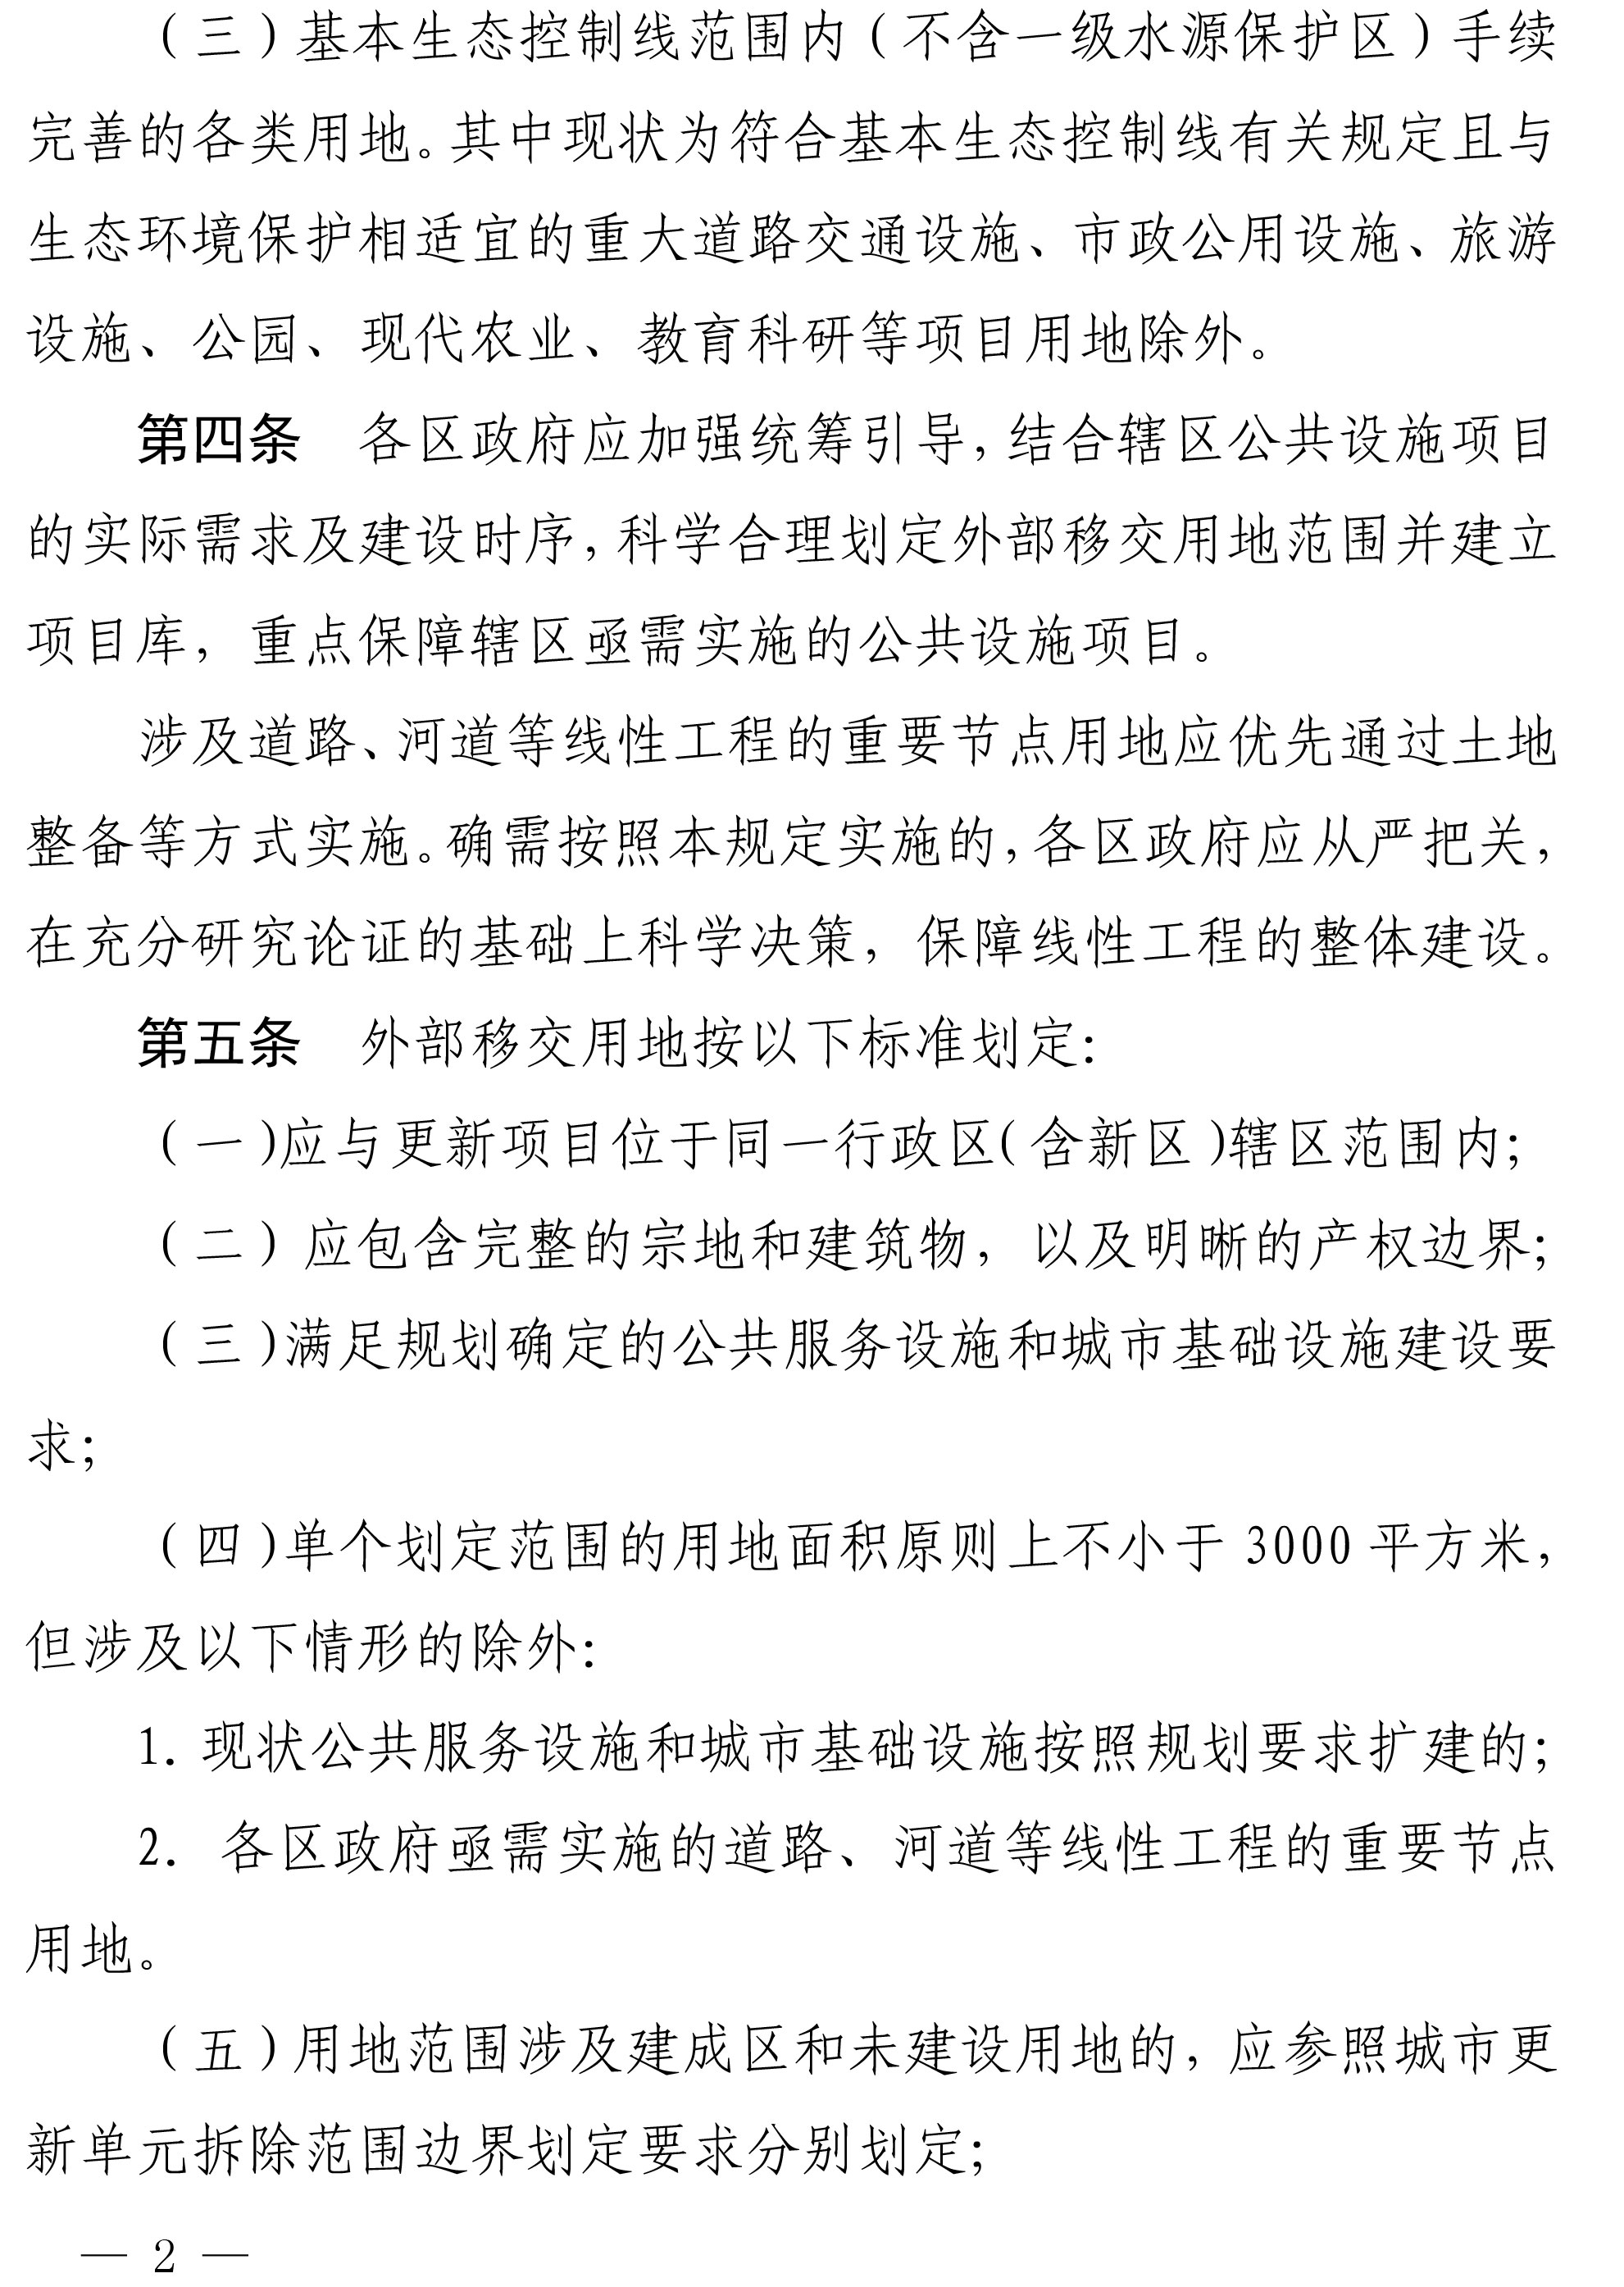 深圳市城市更新外部移交公共设施用地实施管理规定-2.jpg